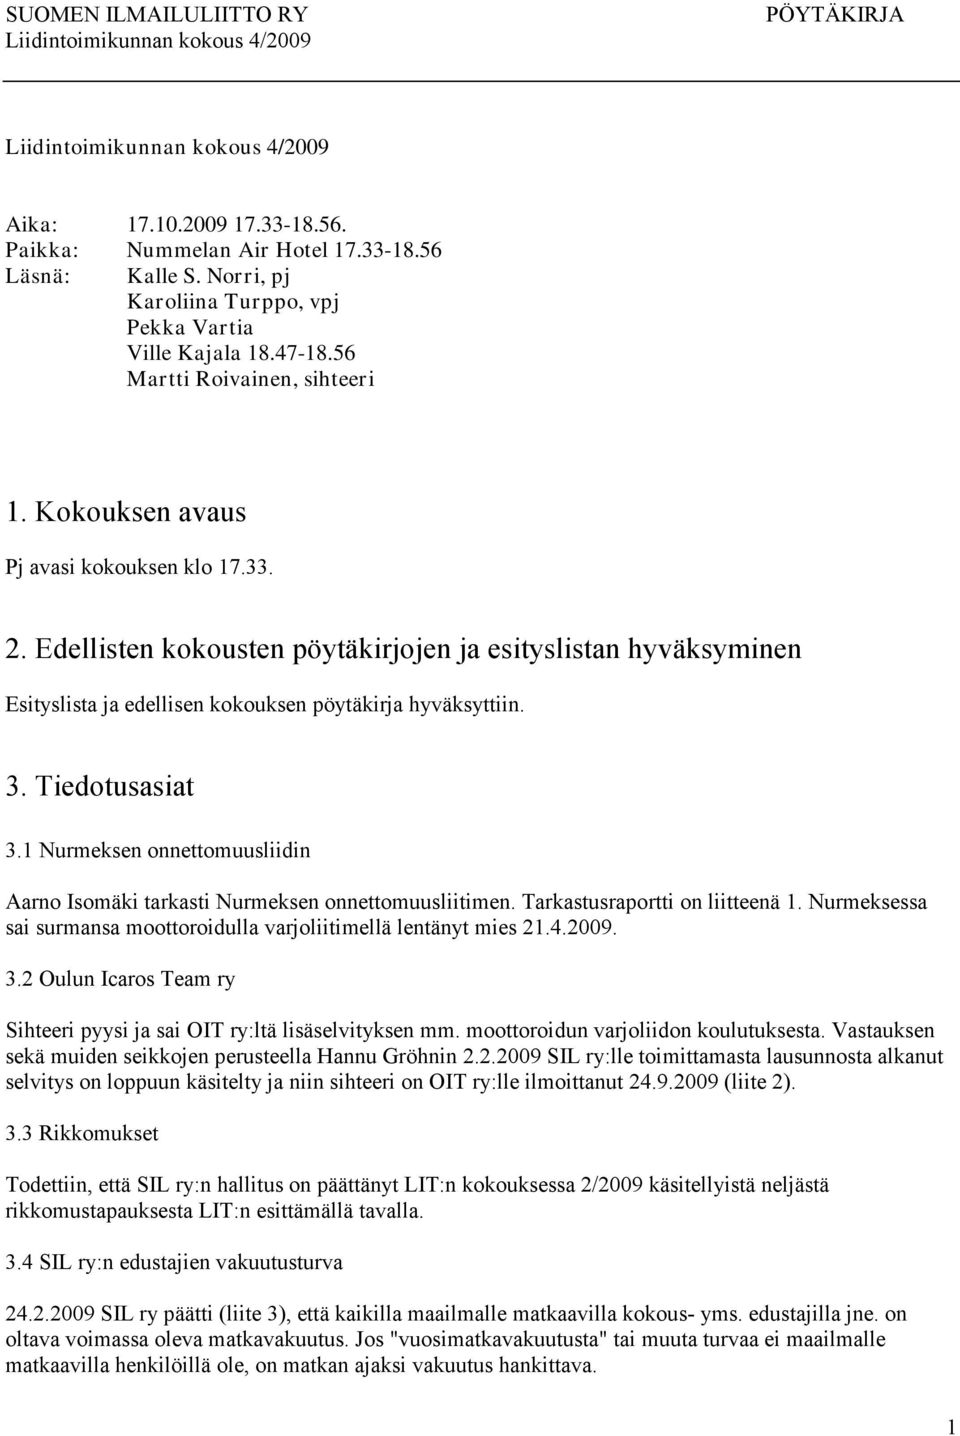 1 Nurmeksen onnettomuusliidin Aarno Isomäki tarkasti Nurmeksen onnettomuusliitimen. Tarkastusraportti on liitteenä 1. Nurmeksessa sai surmansa moottoroidulla varjoliitimellä lentänyt mies 21.4.2009.